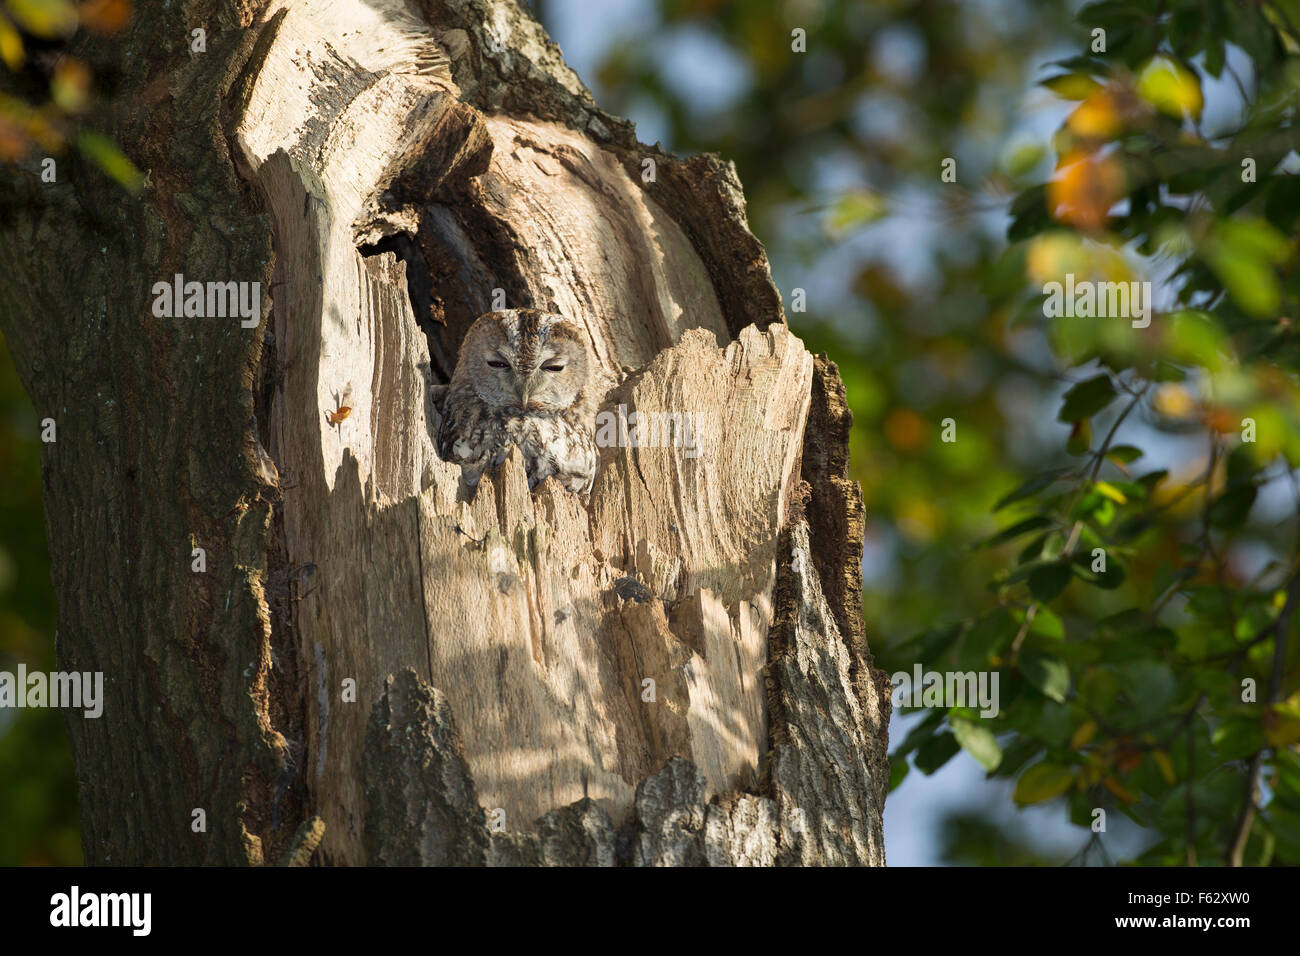 Tawny owl, Waldkauz, ruht am Tage in einer Baumhöhle, Strix aluco, Wald-Kauz, Kauz, Käuzchen Stock Photo